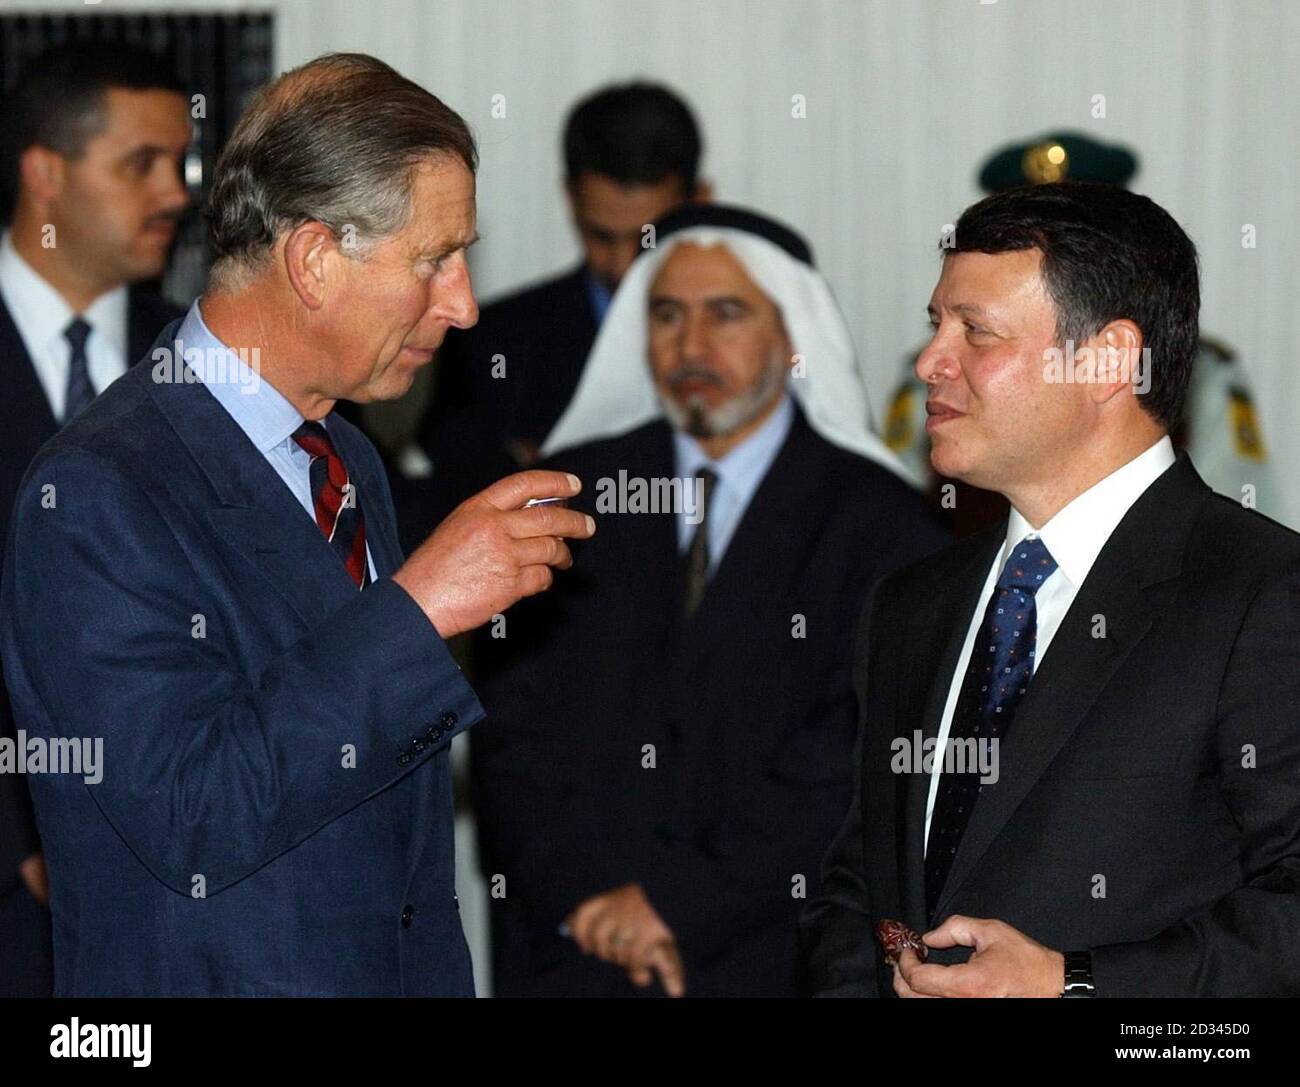 Il Principe del Galles (a sinistra) e il Re Giordano Abdullah si parlano prima di iftar - la rottura del digiuno alla fine della giornata nel mese santo musulmano del Ramadan alla Corte reale di Amman, Giordania. Foto Stock